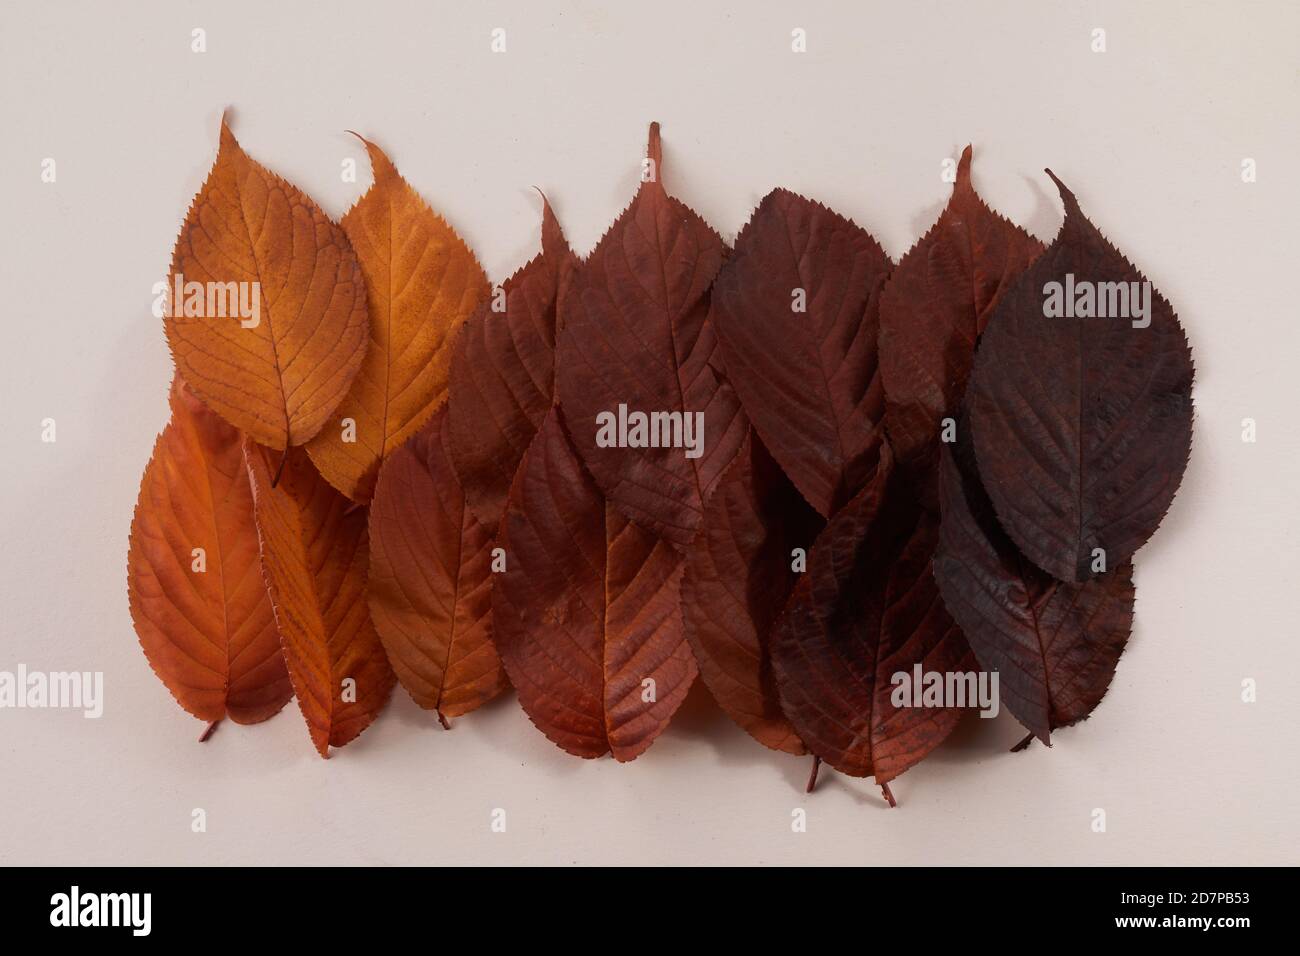 Autumn leaves color gradient. Autumn season change concept. Stock Photo